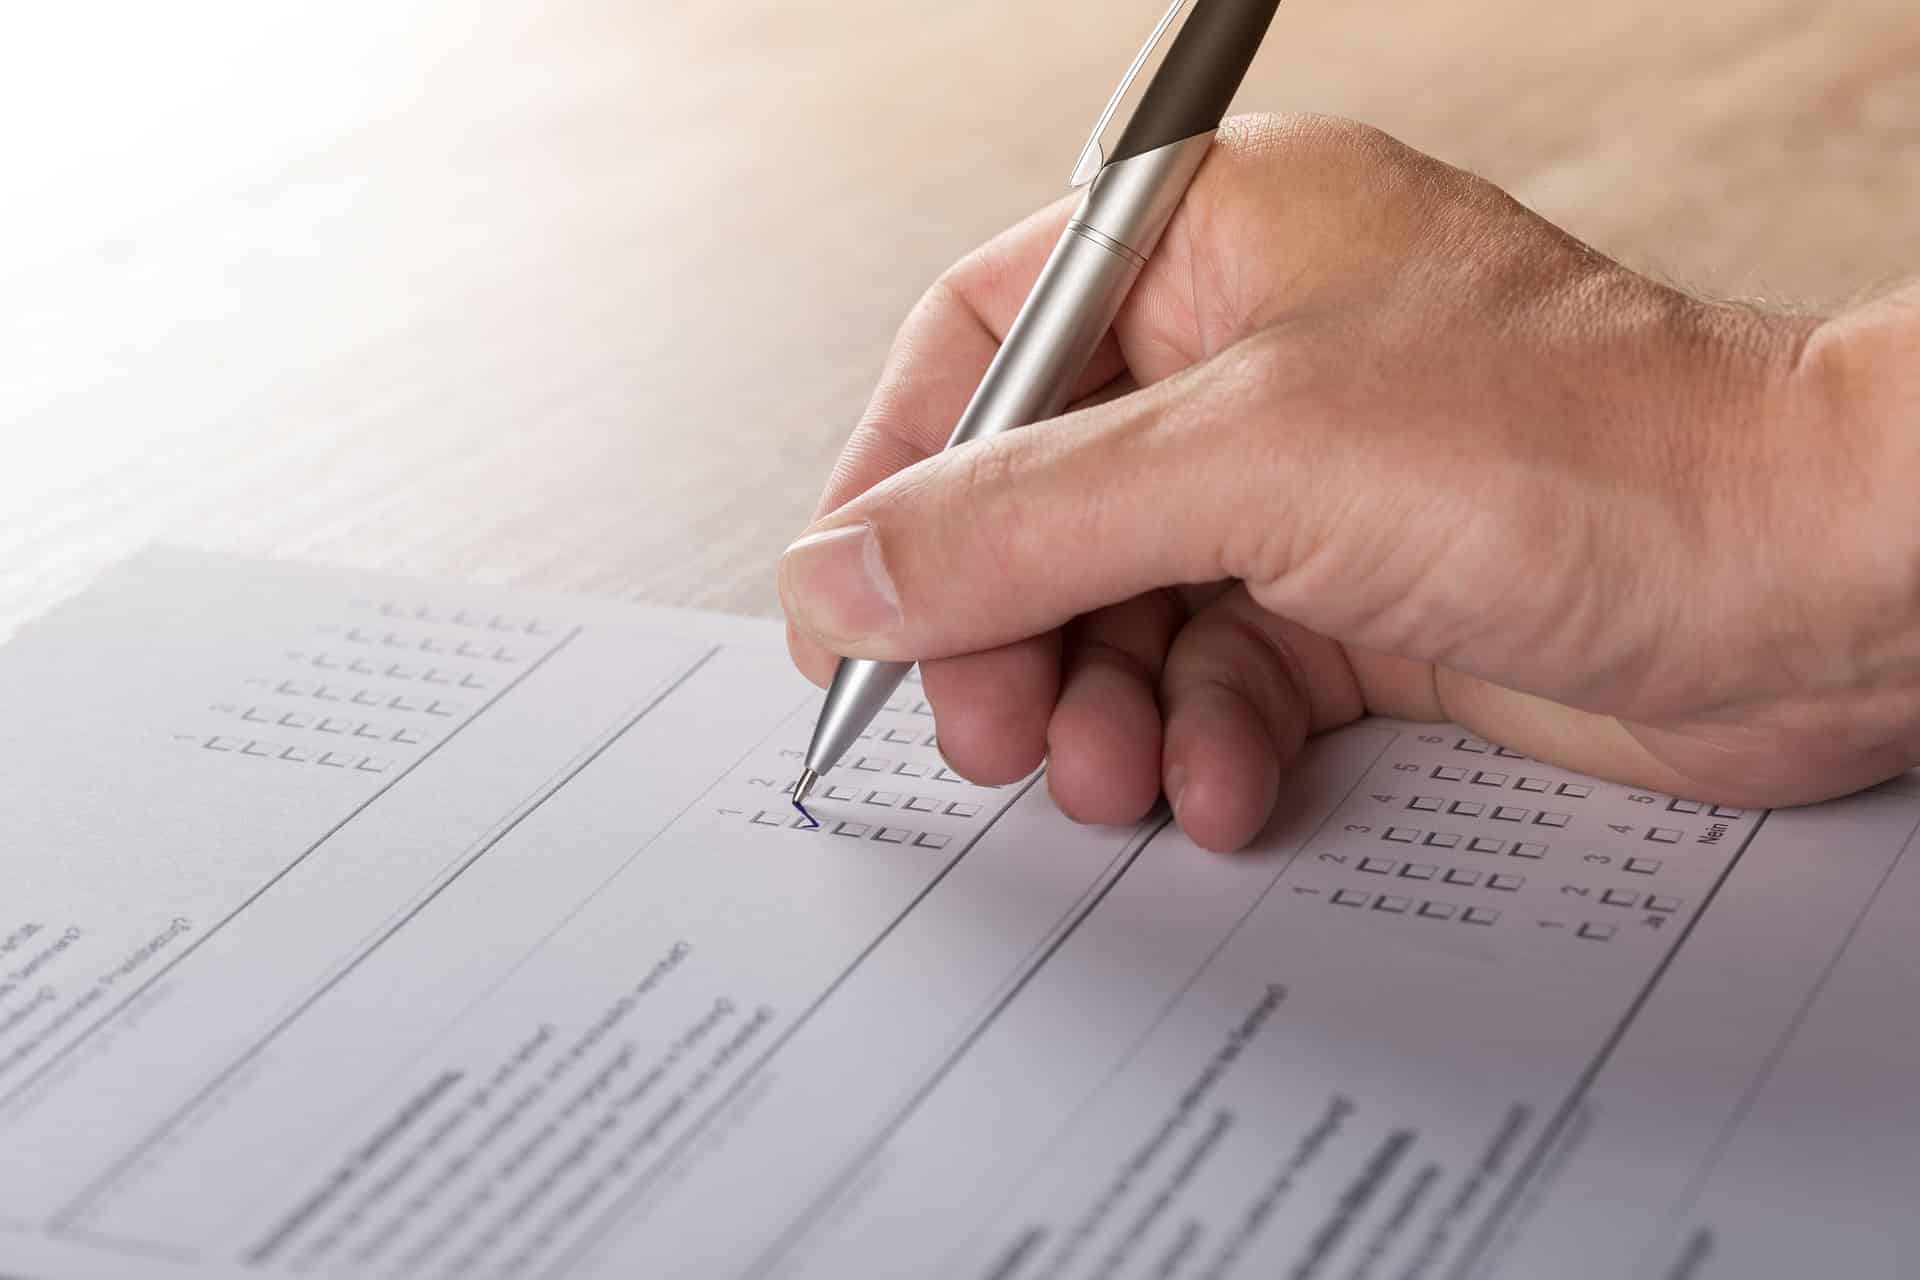 Eine Hand mit Stift beim Ausfüllen eines Fragebogens. | Foto: Pixabay